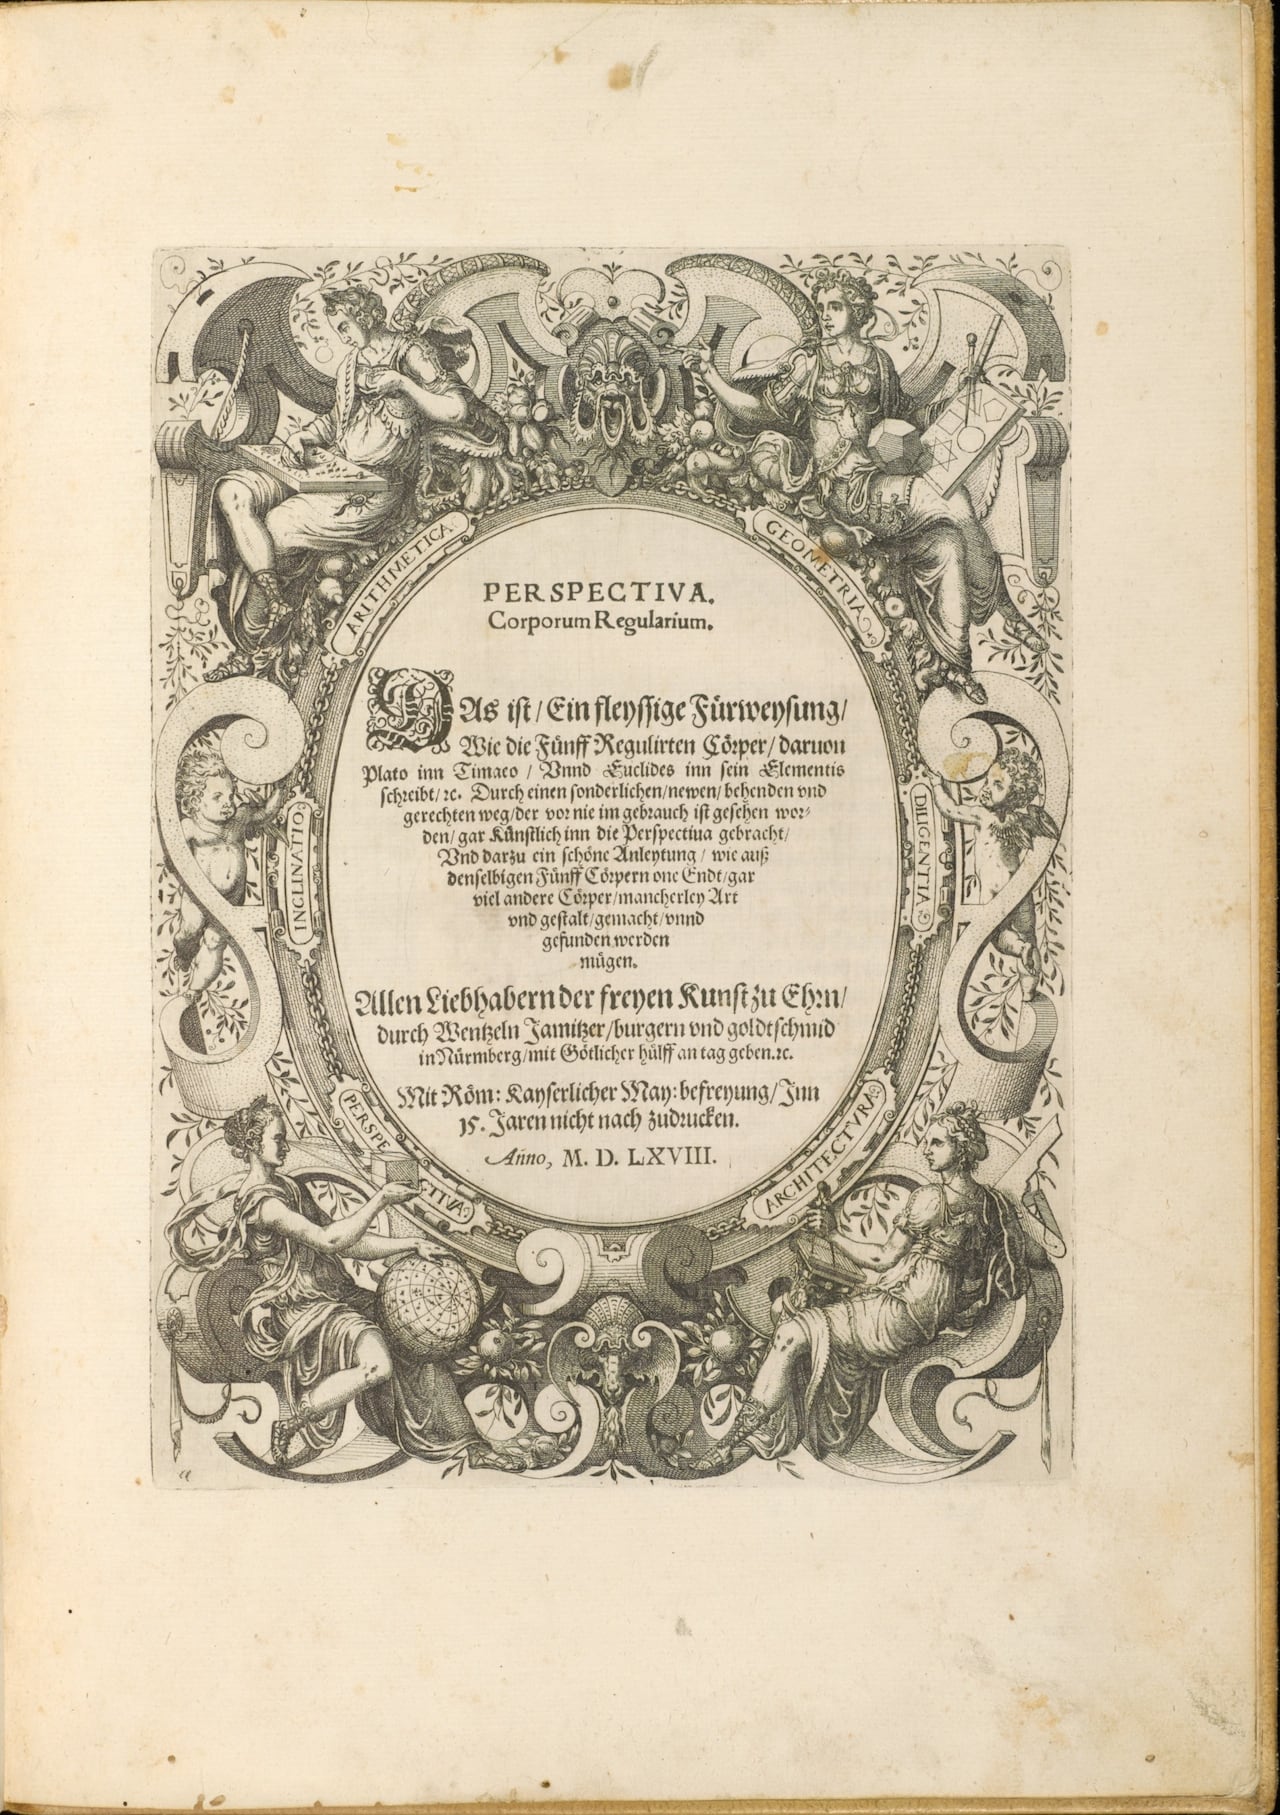 title page of wenzel jamnitzer’s ‘perspectiva corporum regularium’ 